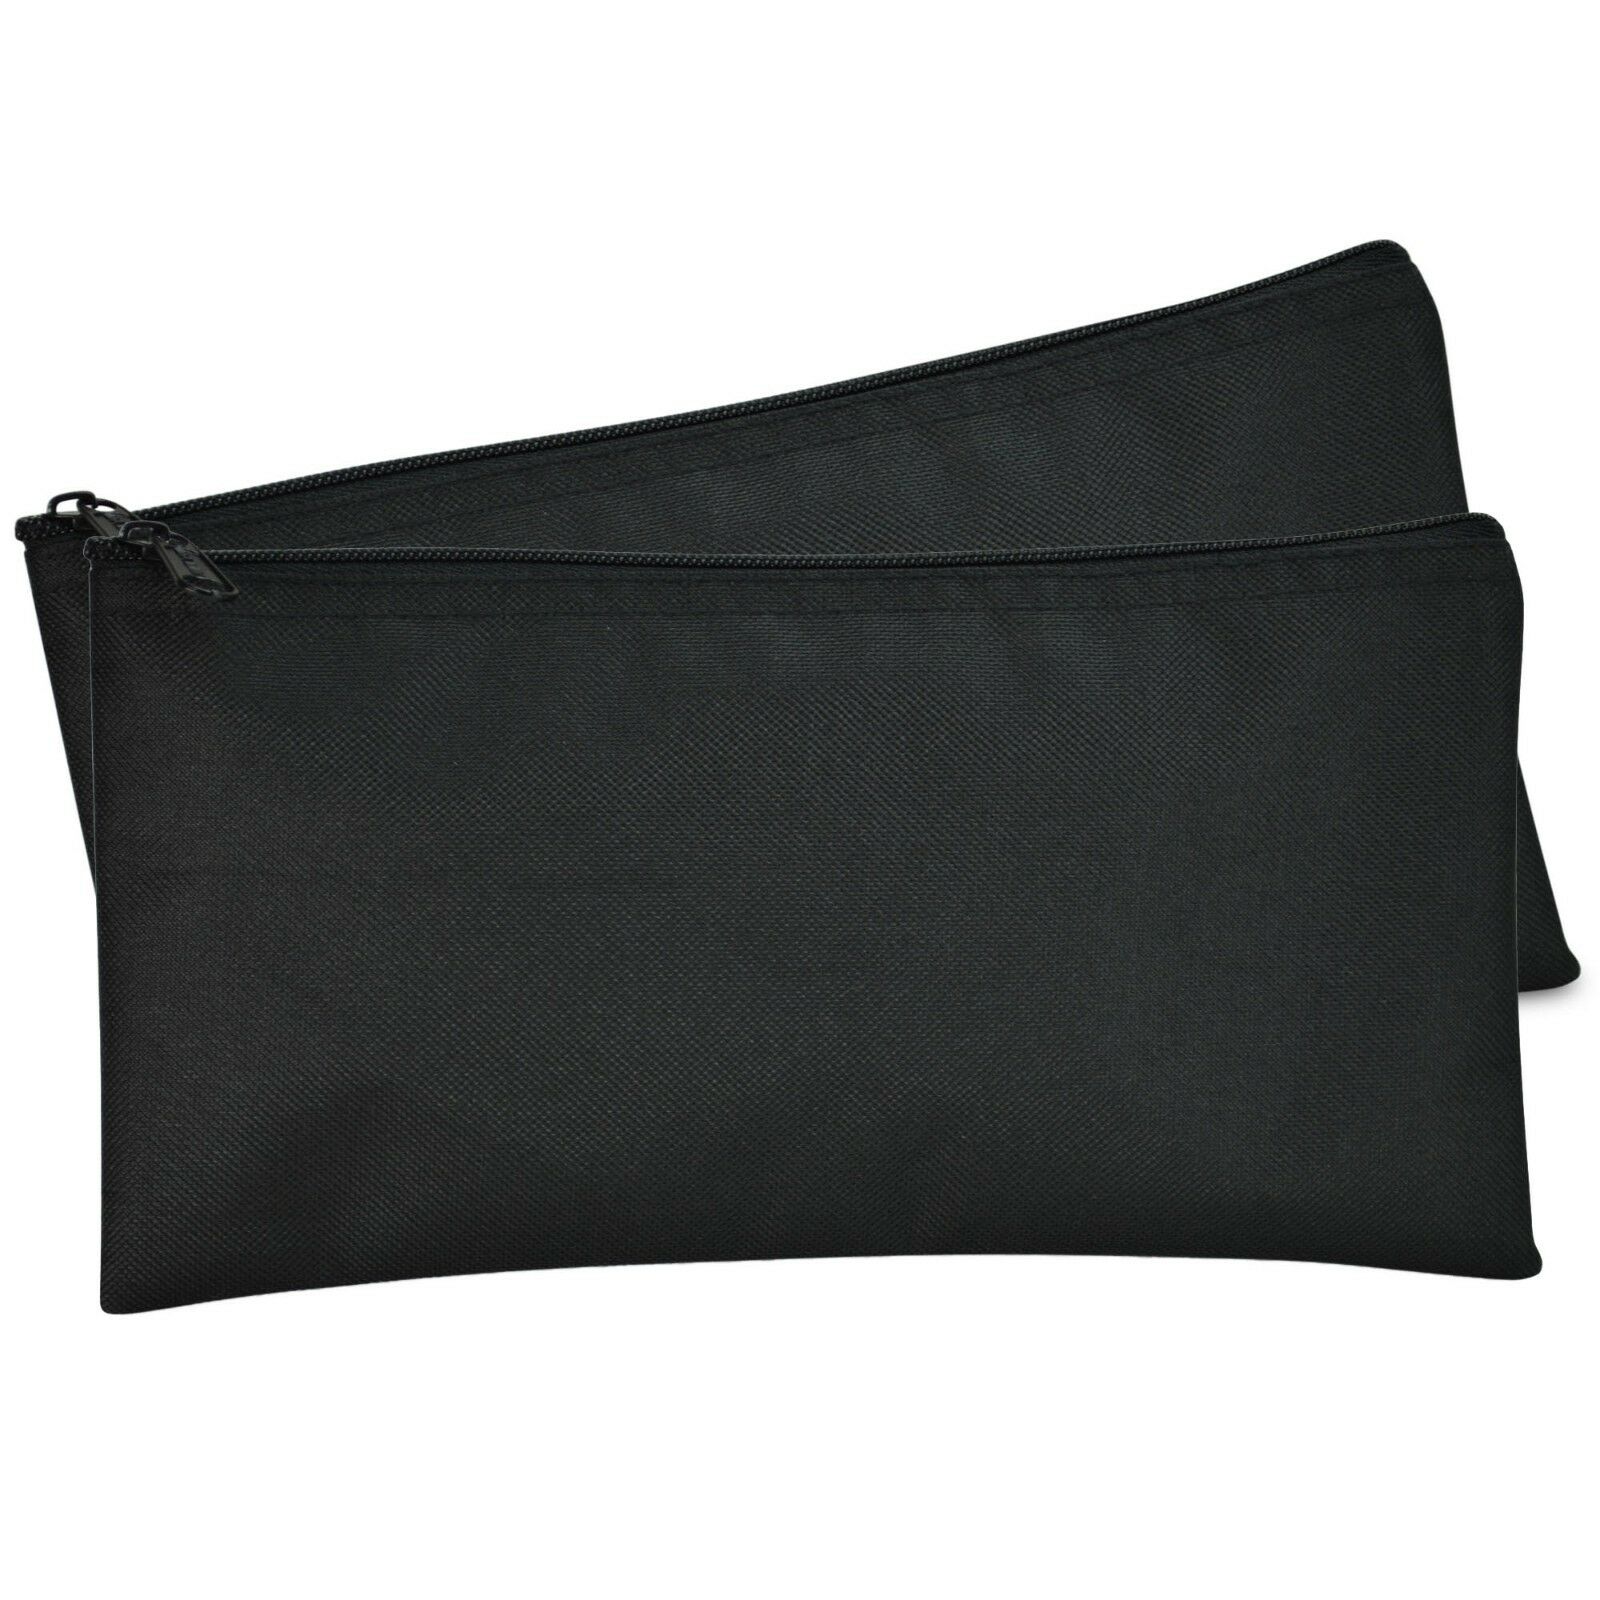 Dalix Zipper Money Bank Bag Pencil Pouch Makeup Travel Accessories Black 2 Pack